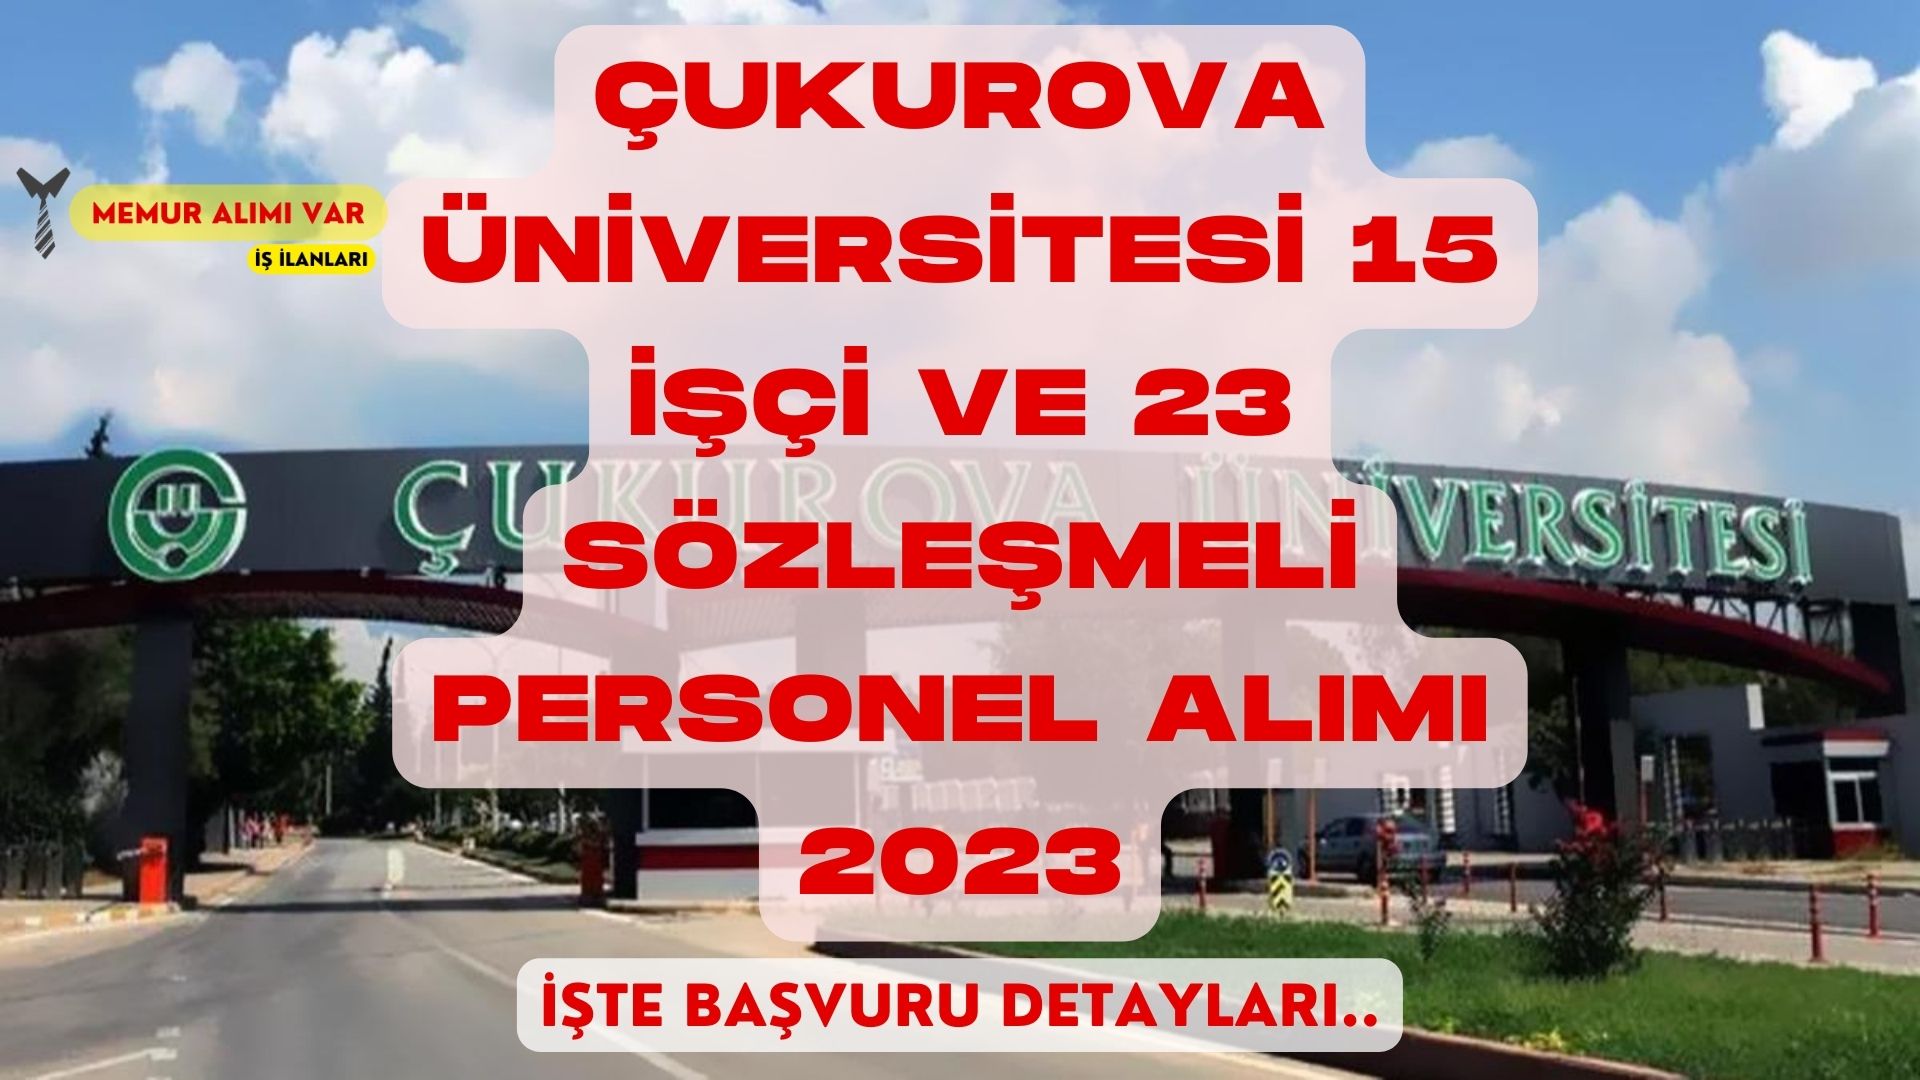 Çukurova Üniversitesi 15 İşçi ve 23 Sözleşmeli Personel Alımı 2023